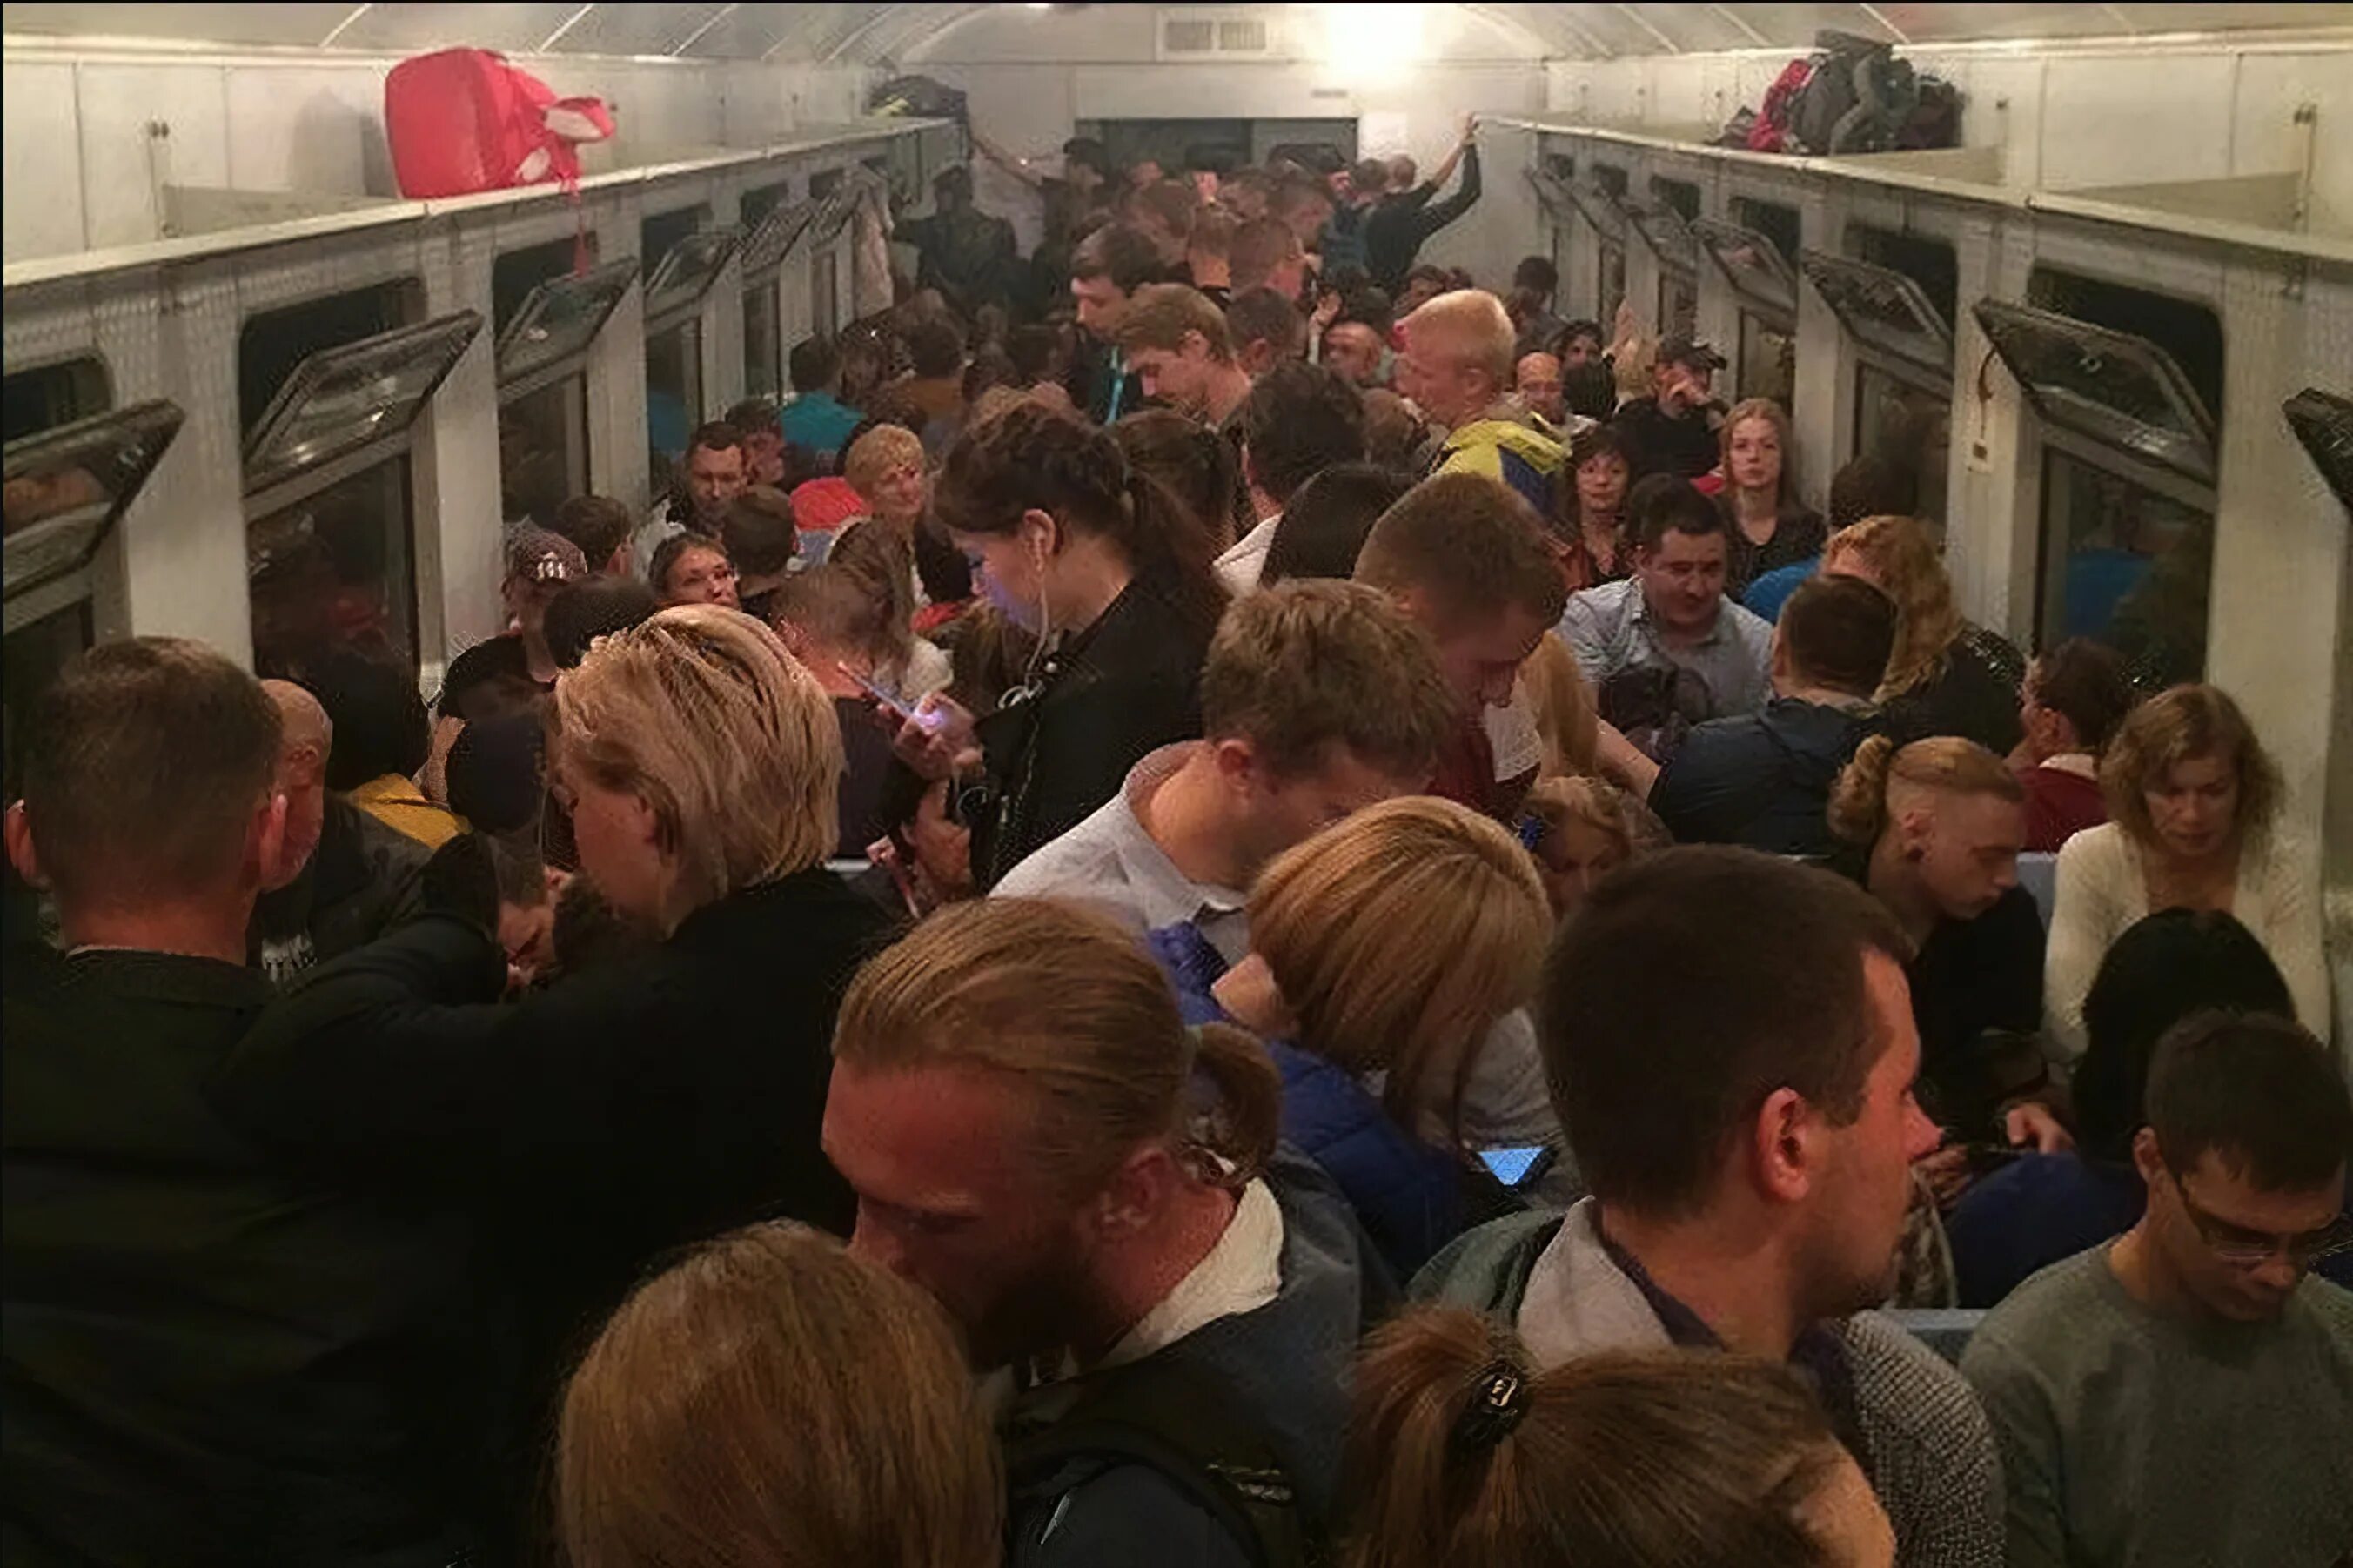 Станция метро Выхино час пик. Люди на поезде толпа. Давка в электричке. Электричка много народу. Народу в дом набилось битком